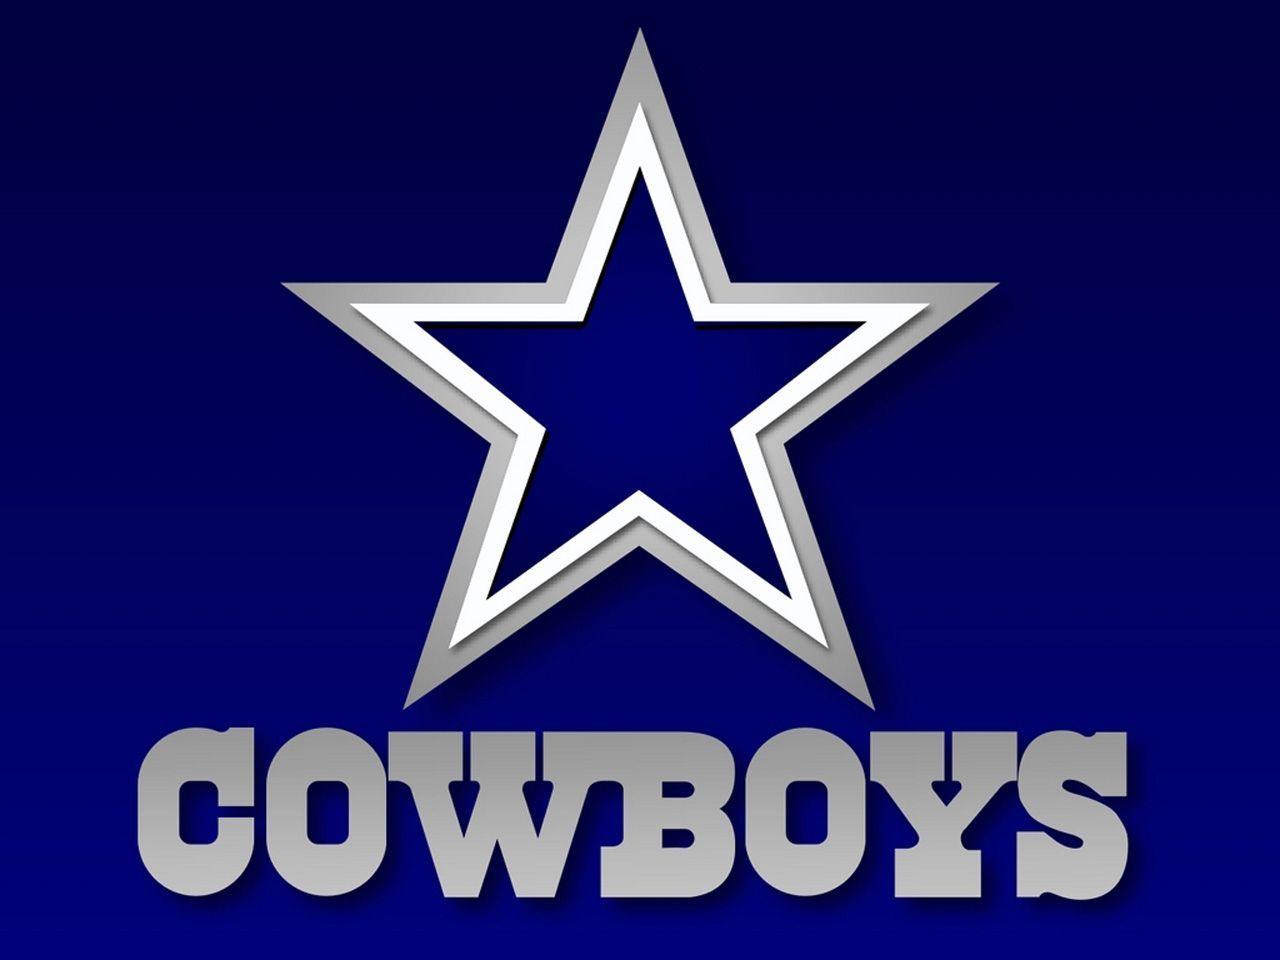 Dallas Cowboys wallpaper. Dallas Cowboys background